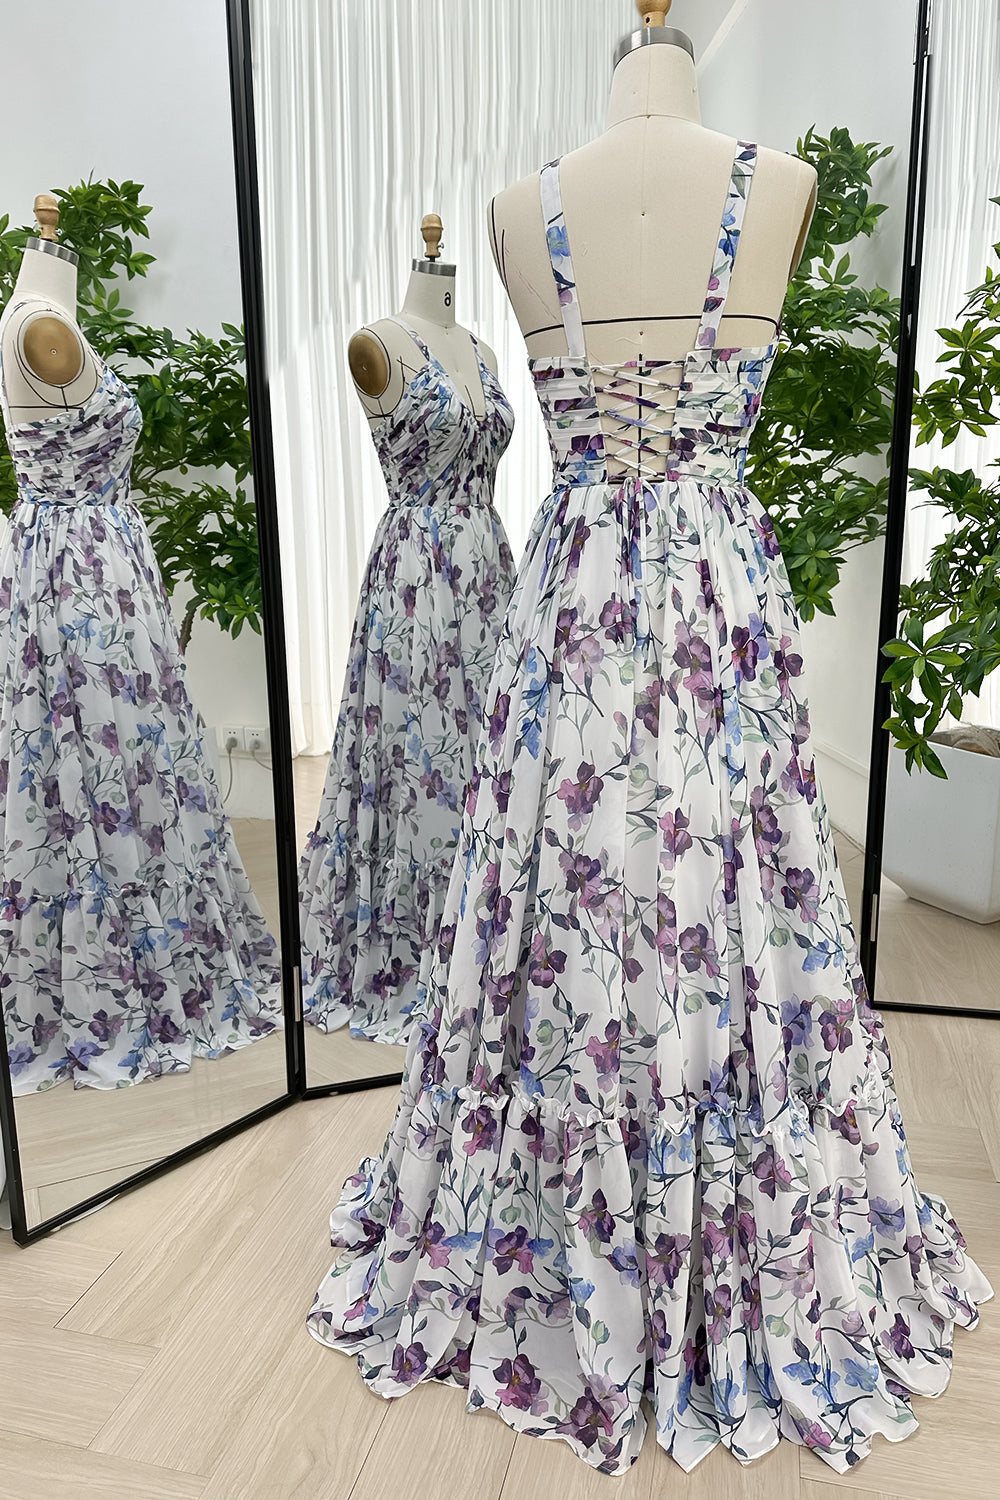 MissJophiel Hatler Straps Corset Floral Chiffon Dress with Lace Up Back